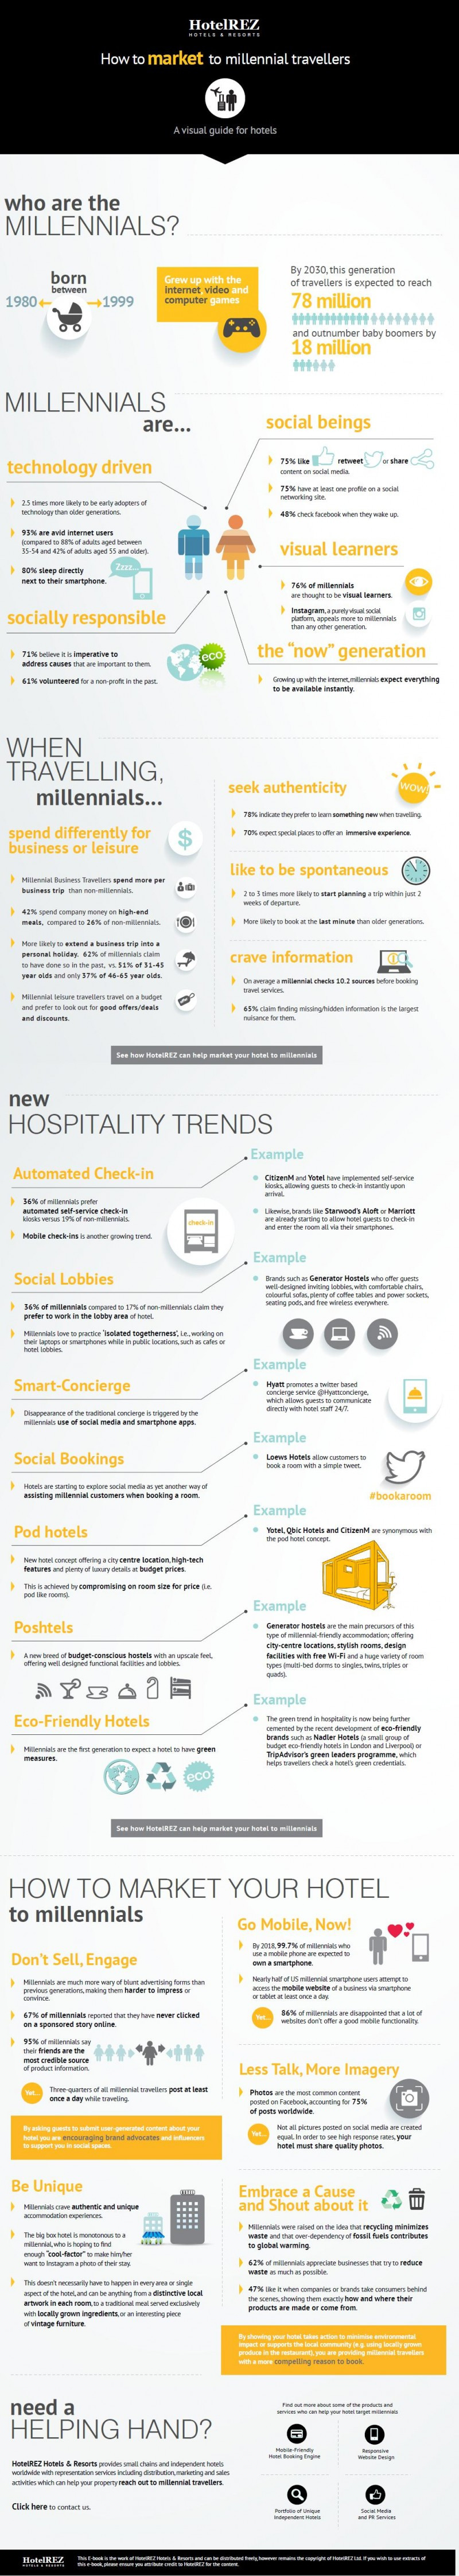 Infografía de HotelREZ sobre las características del nicho de mercado de los Millennials.